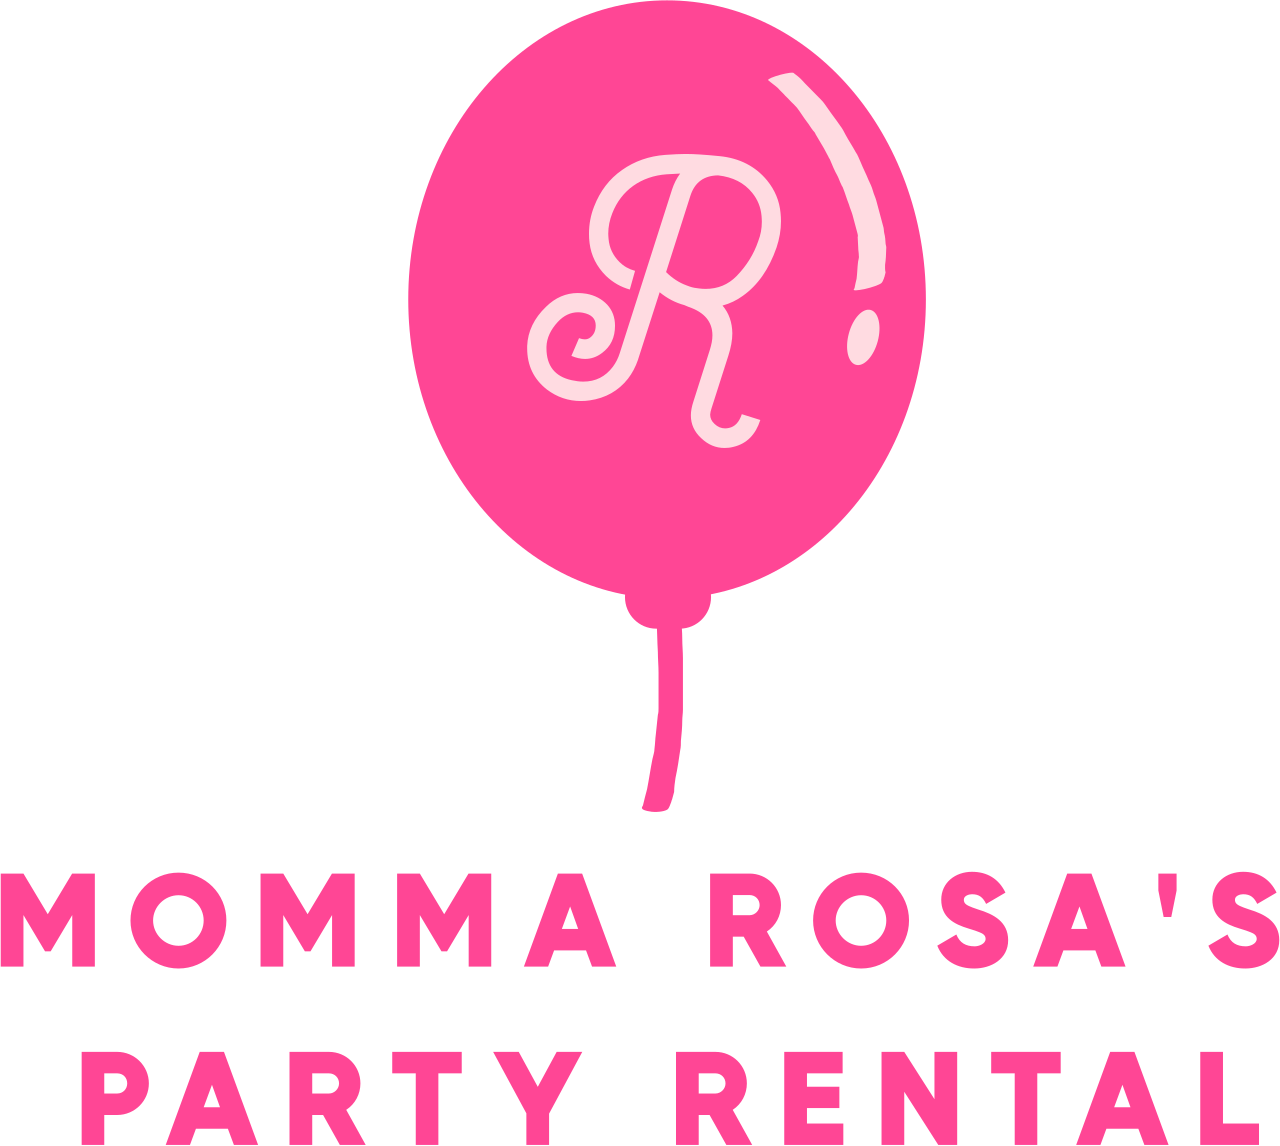 Momma Rosa's 
Party Rental's logo